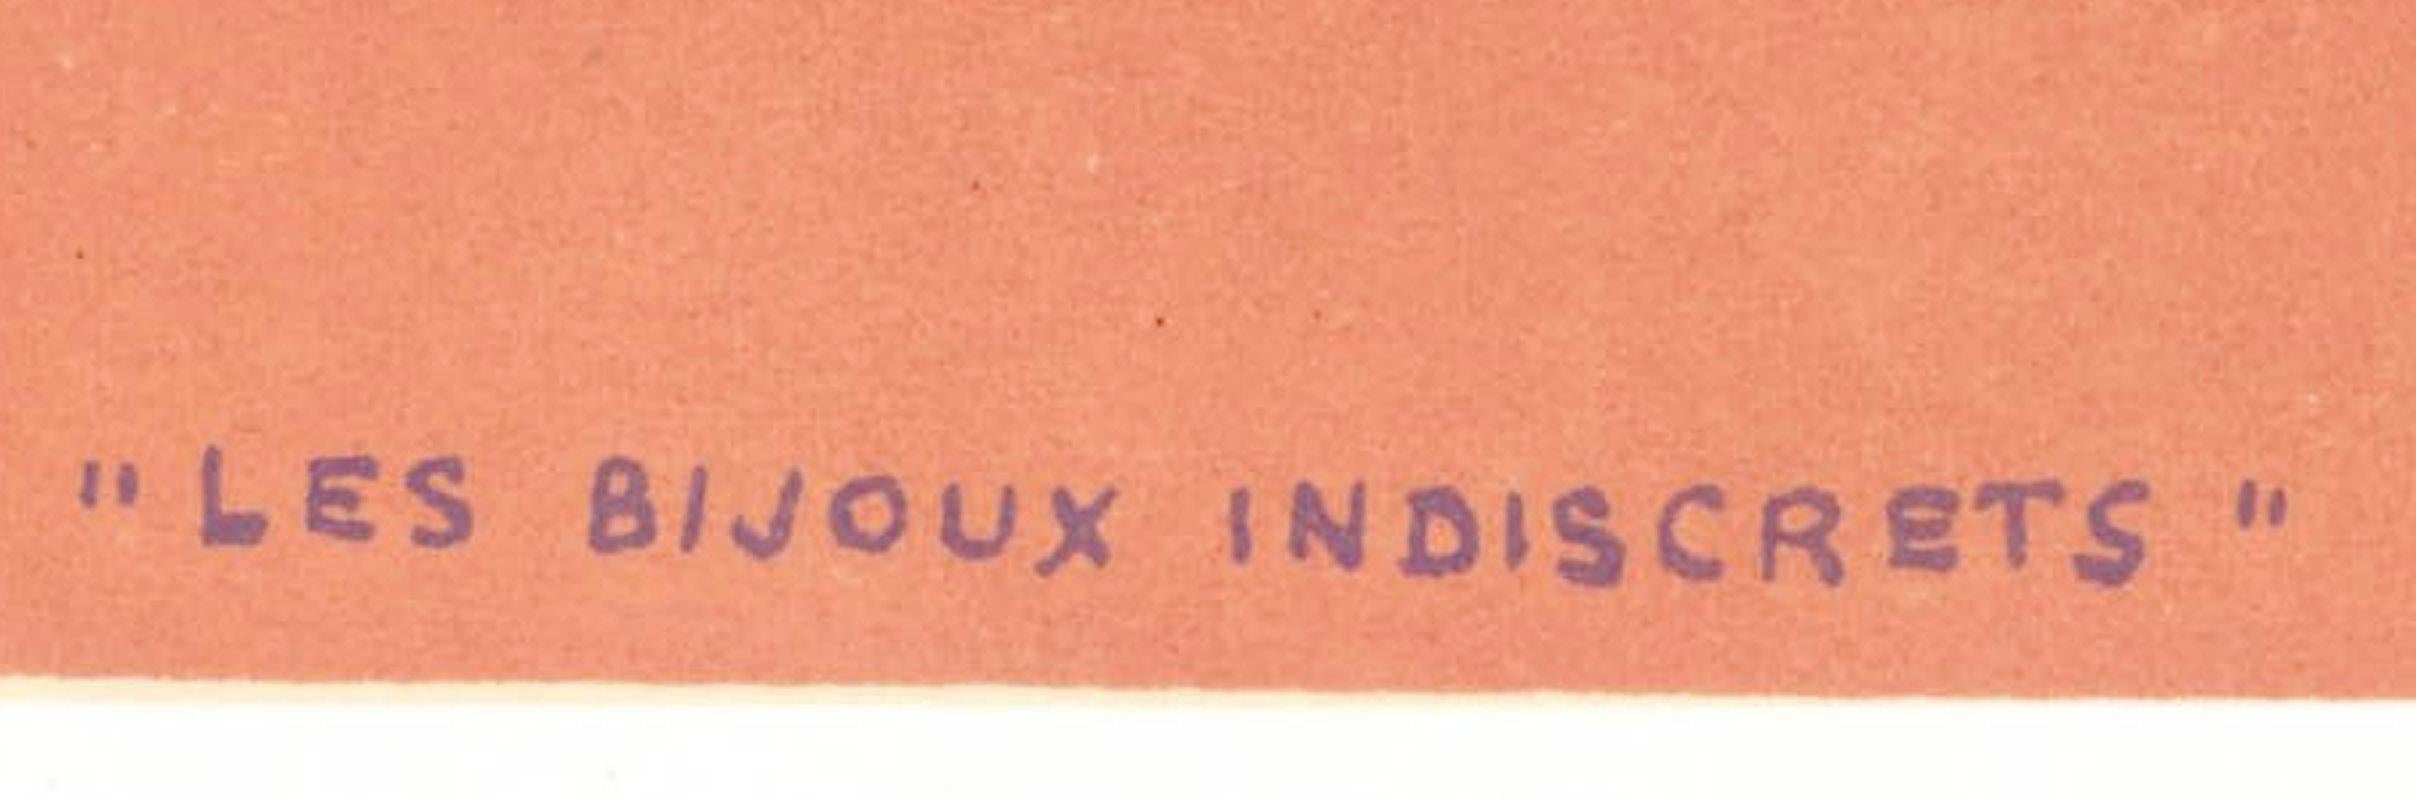 Les Bijoux Indiscrets
(Les Joyaux Indiscrets)
Lithographie en couleur, 1962-3
Publié dans XXeme Siecle, 1963
De l'édition publiée par San Lazarro non signée pour l'album XXeme Siècle No.22. Imprimé à partir des mêmes pierres et à la même date que